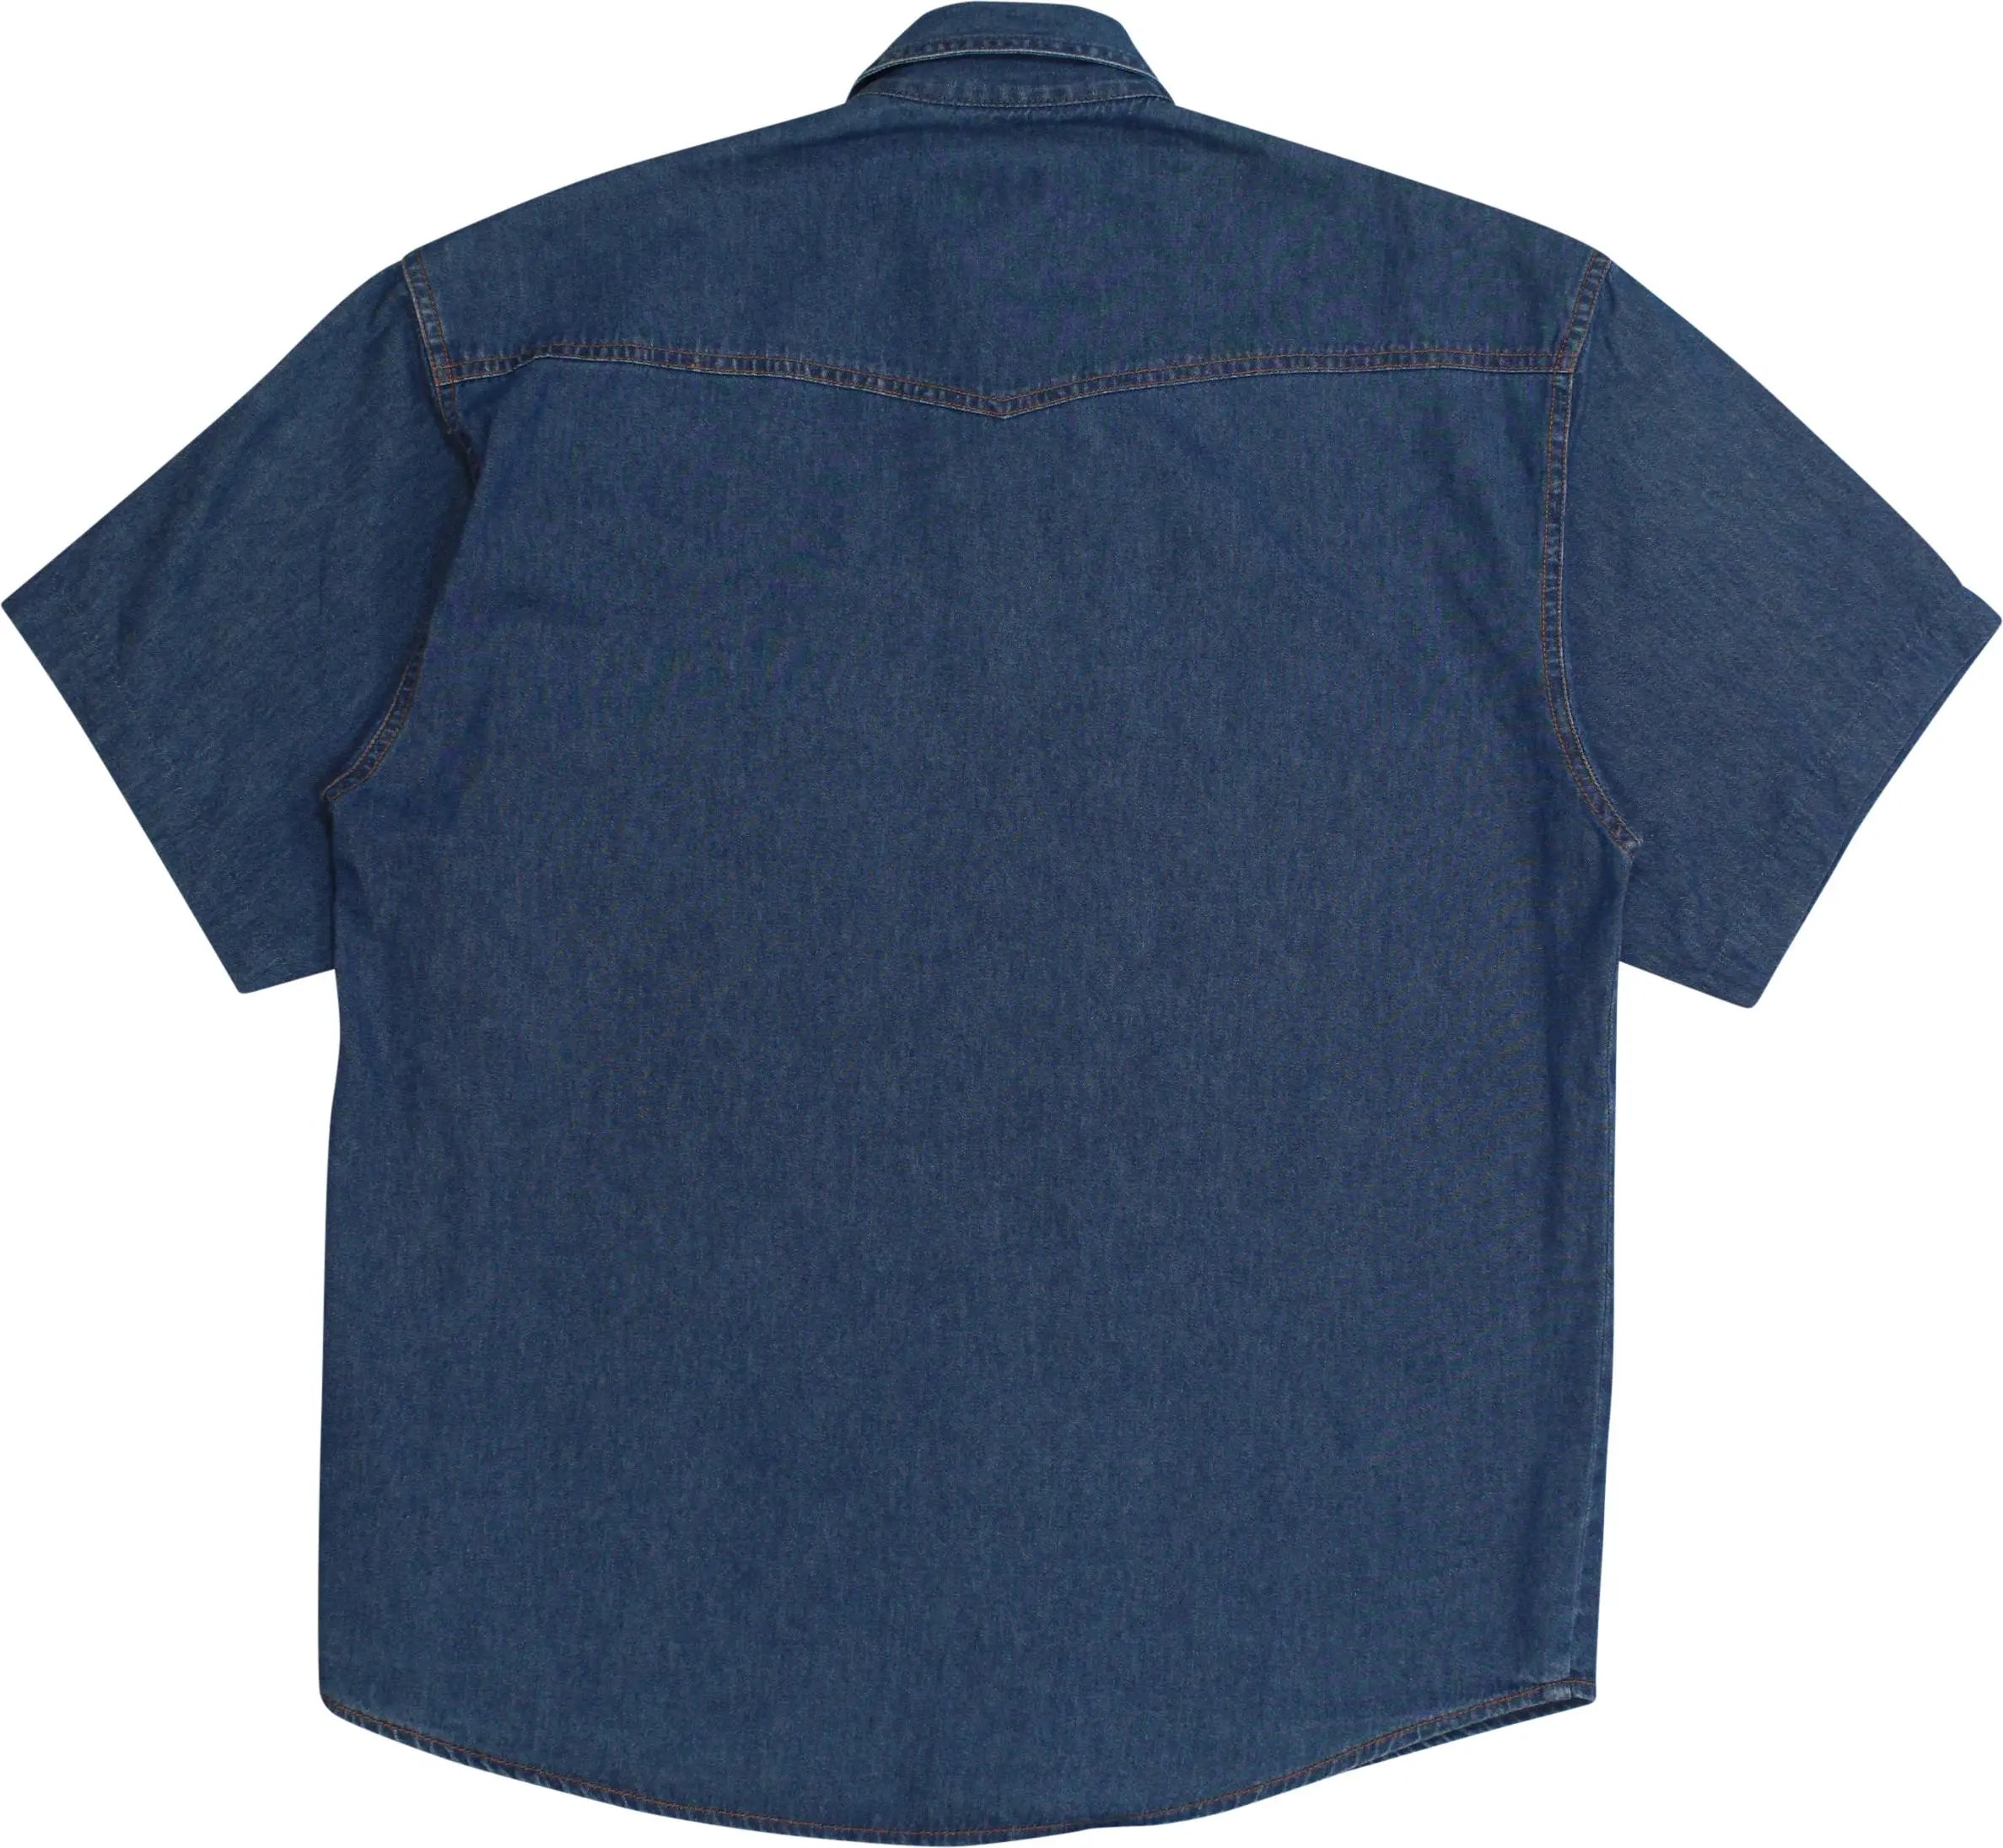 Master - Vintage Short Sleeve Denim Shirt- ThriftTale.com - Vintage and second handclothing